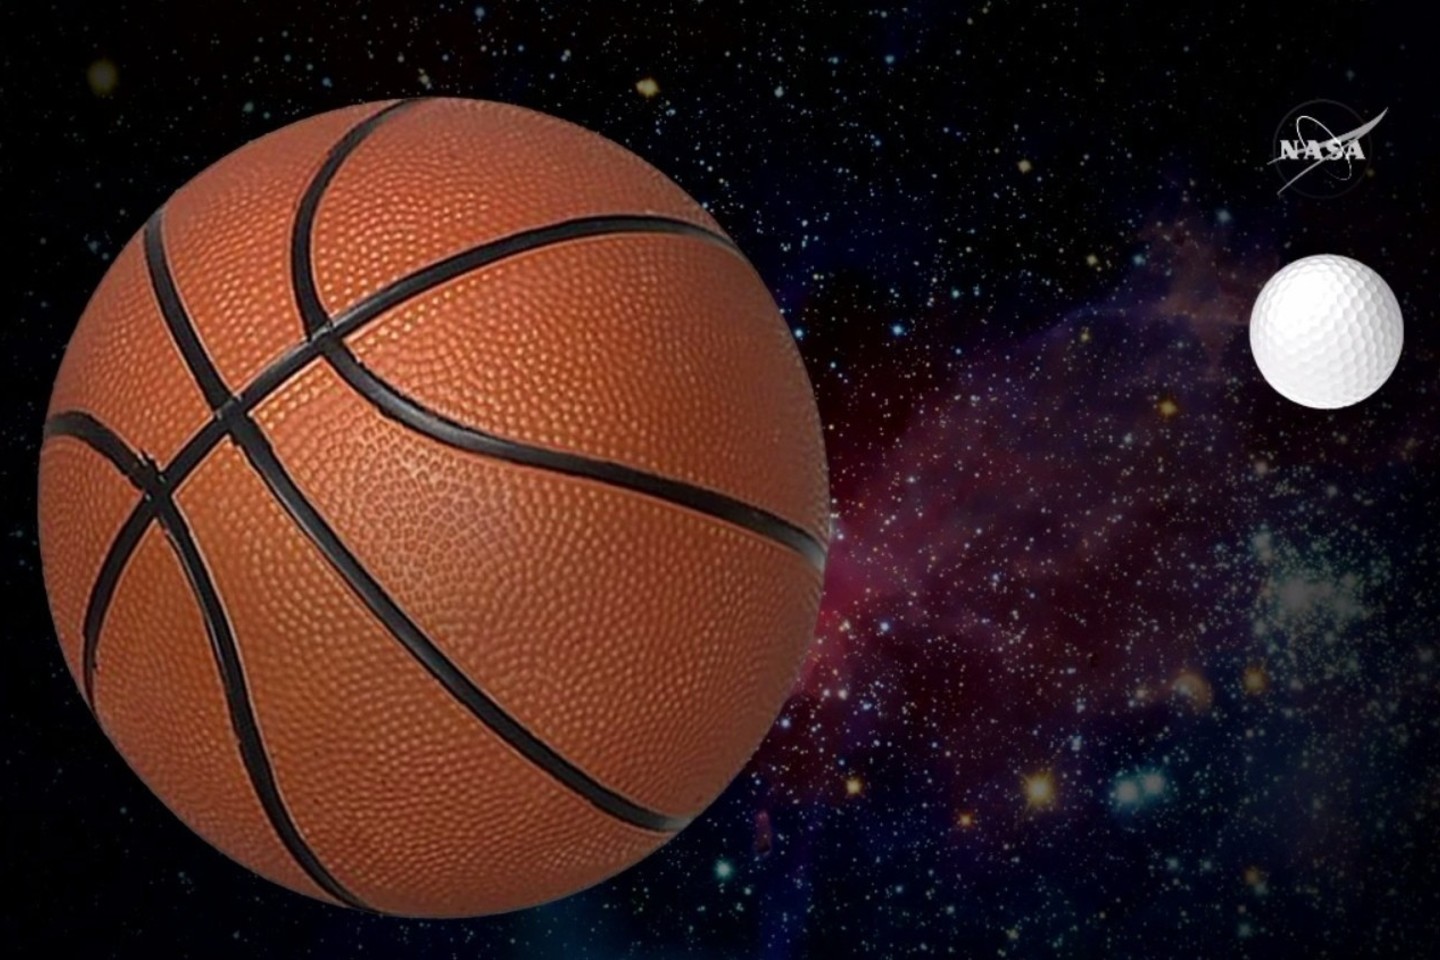 Palyginimas: jei mūsų Saulė būtų tokio dydžio kaip krepšinio kamuolys, tai TRAPPIST-1 – kaip golfo kamuoliukas.<br>NASA iliustr.